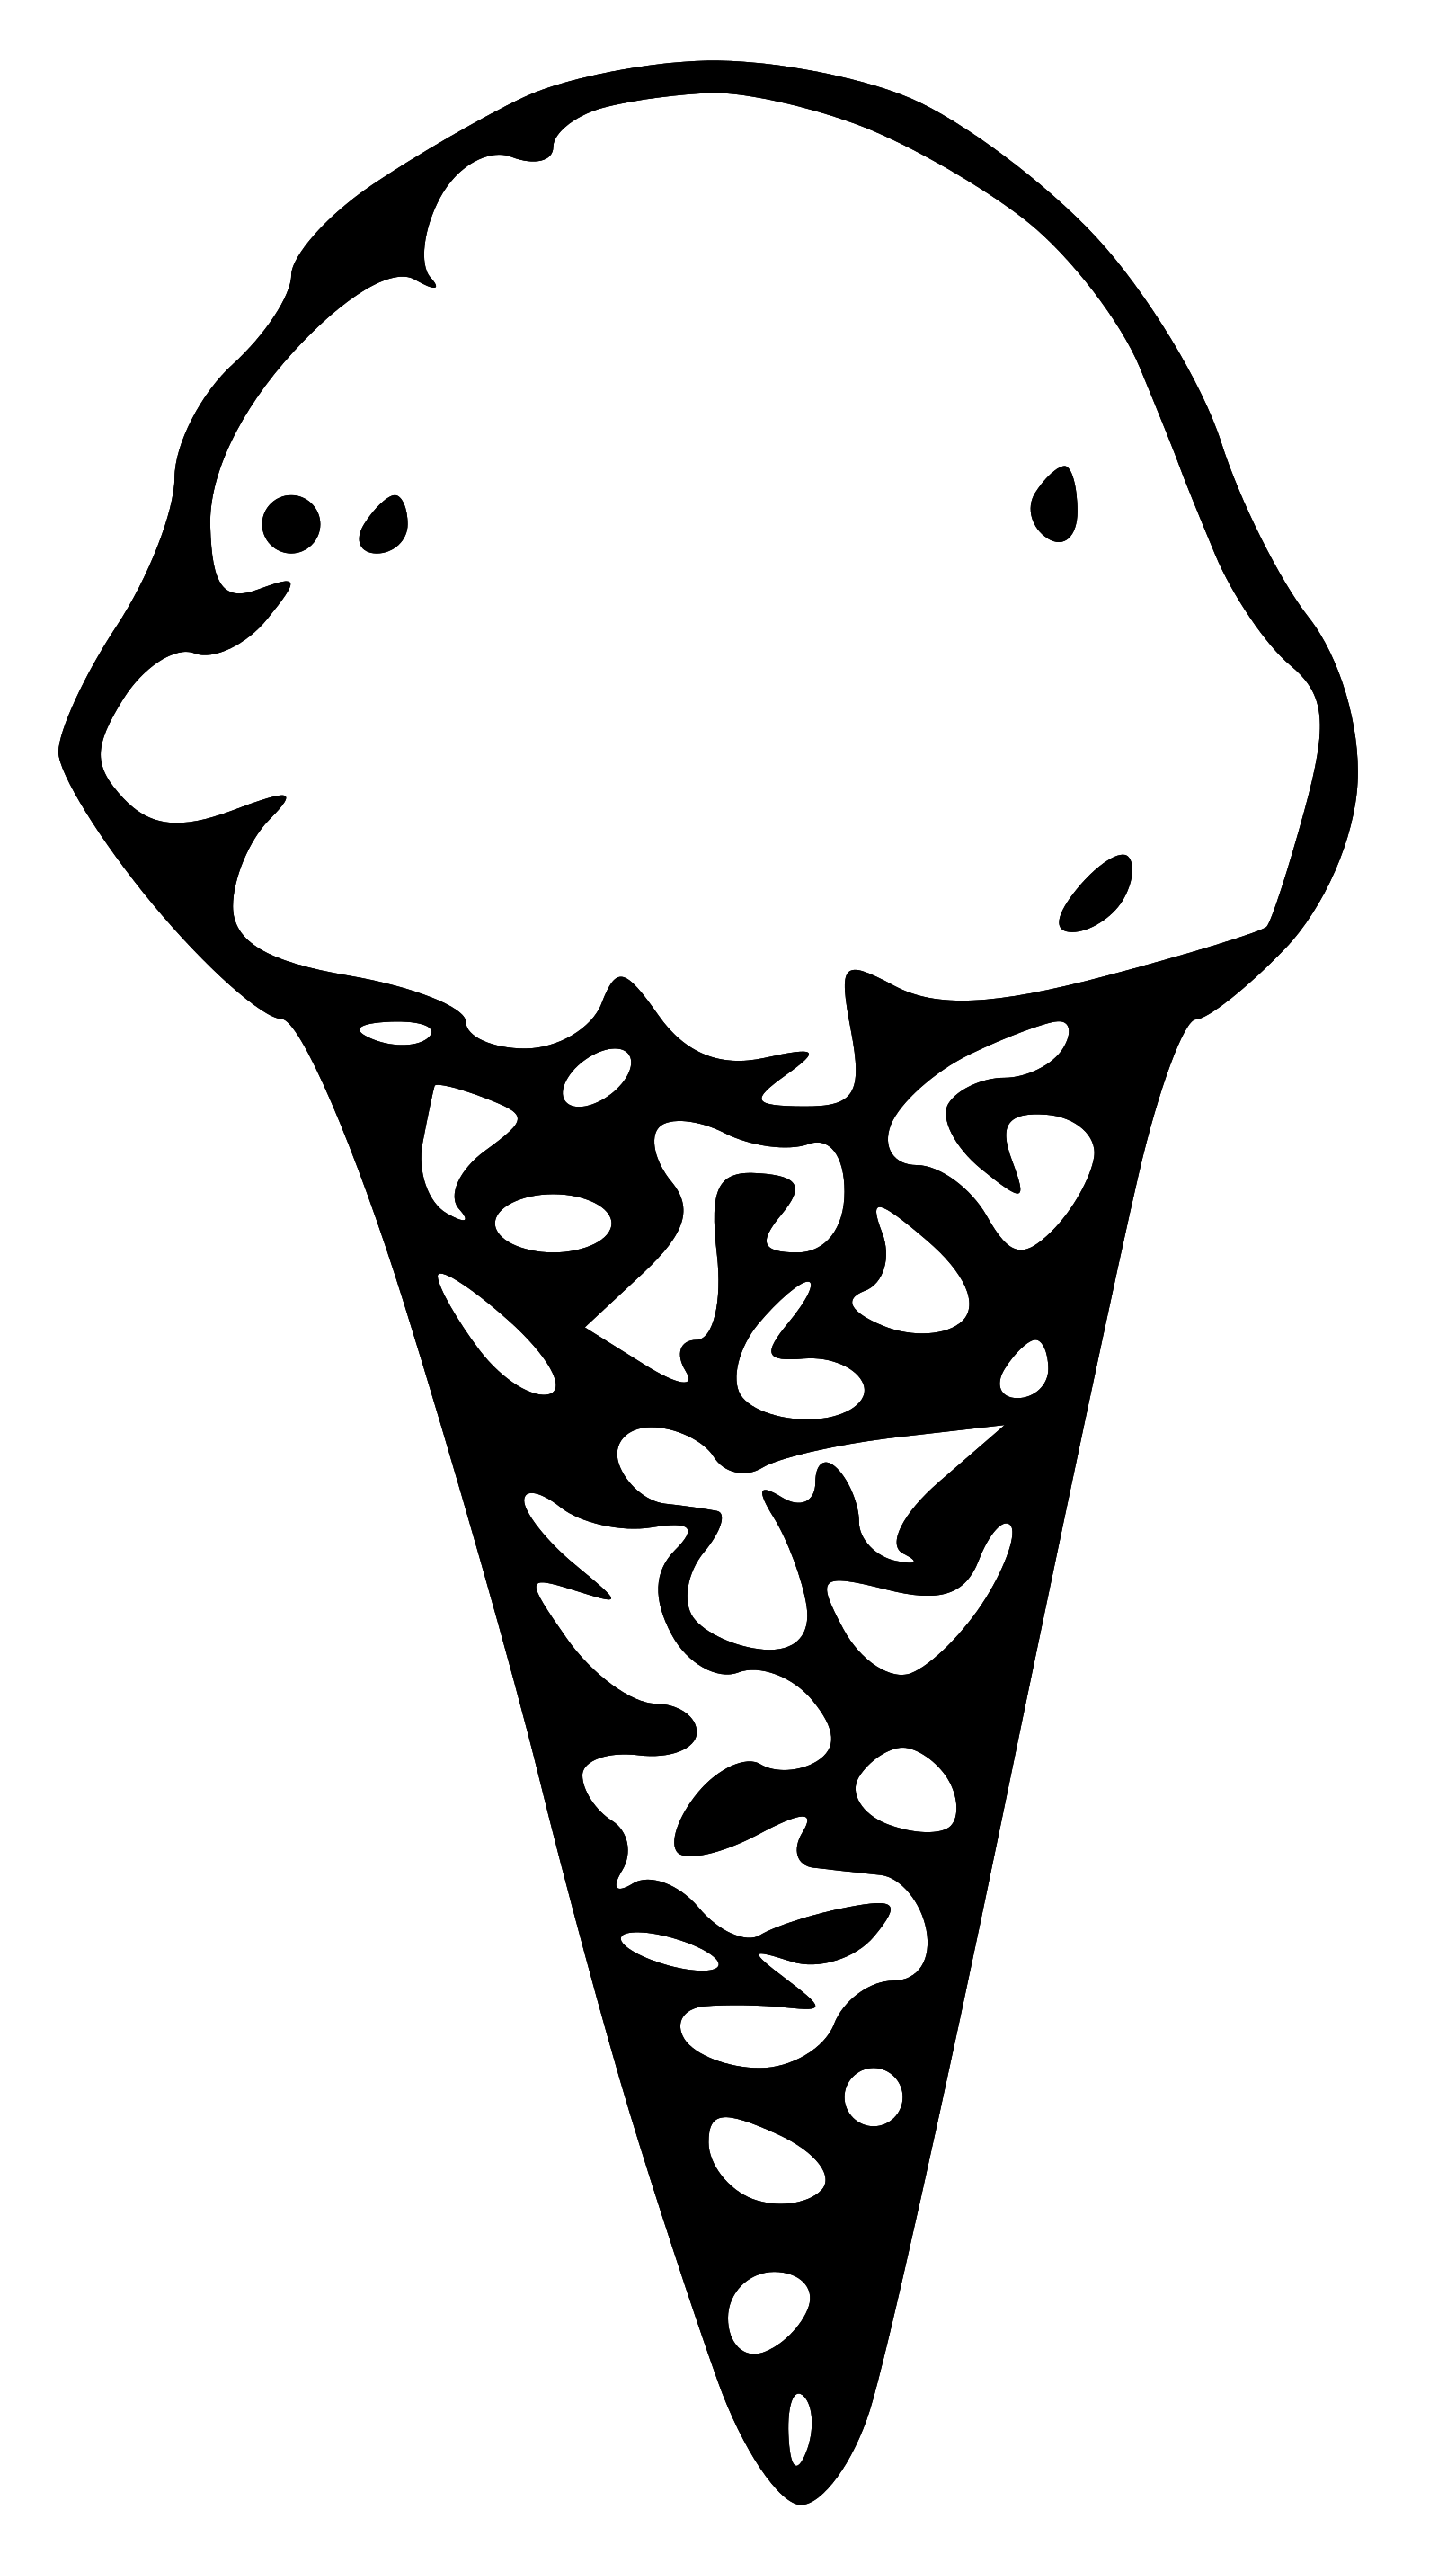 ice cream cone clipart black and white - photo #45